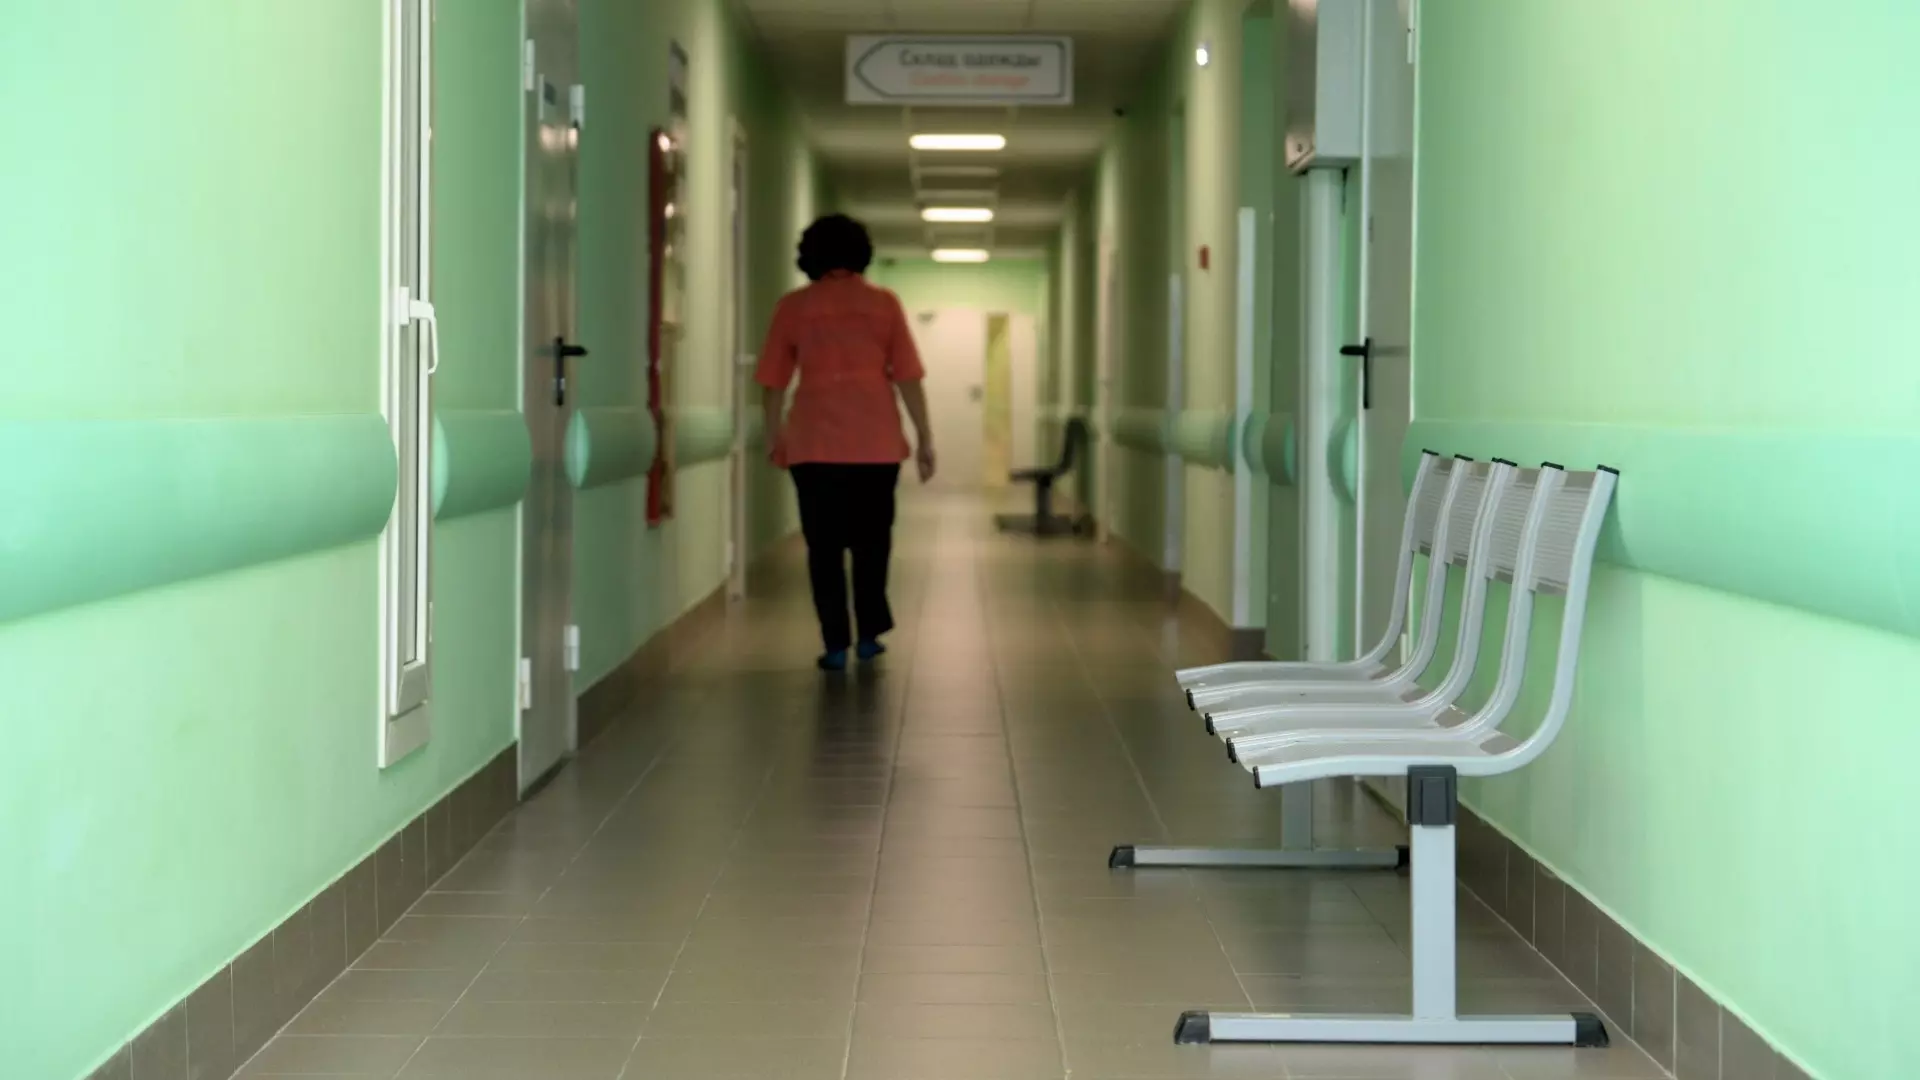 Санитарка лишилась работы после скандала в волгоградской больнице